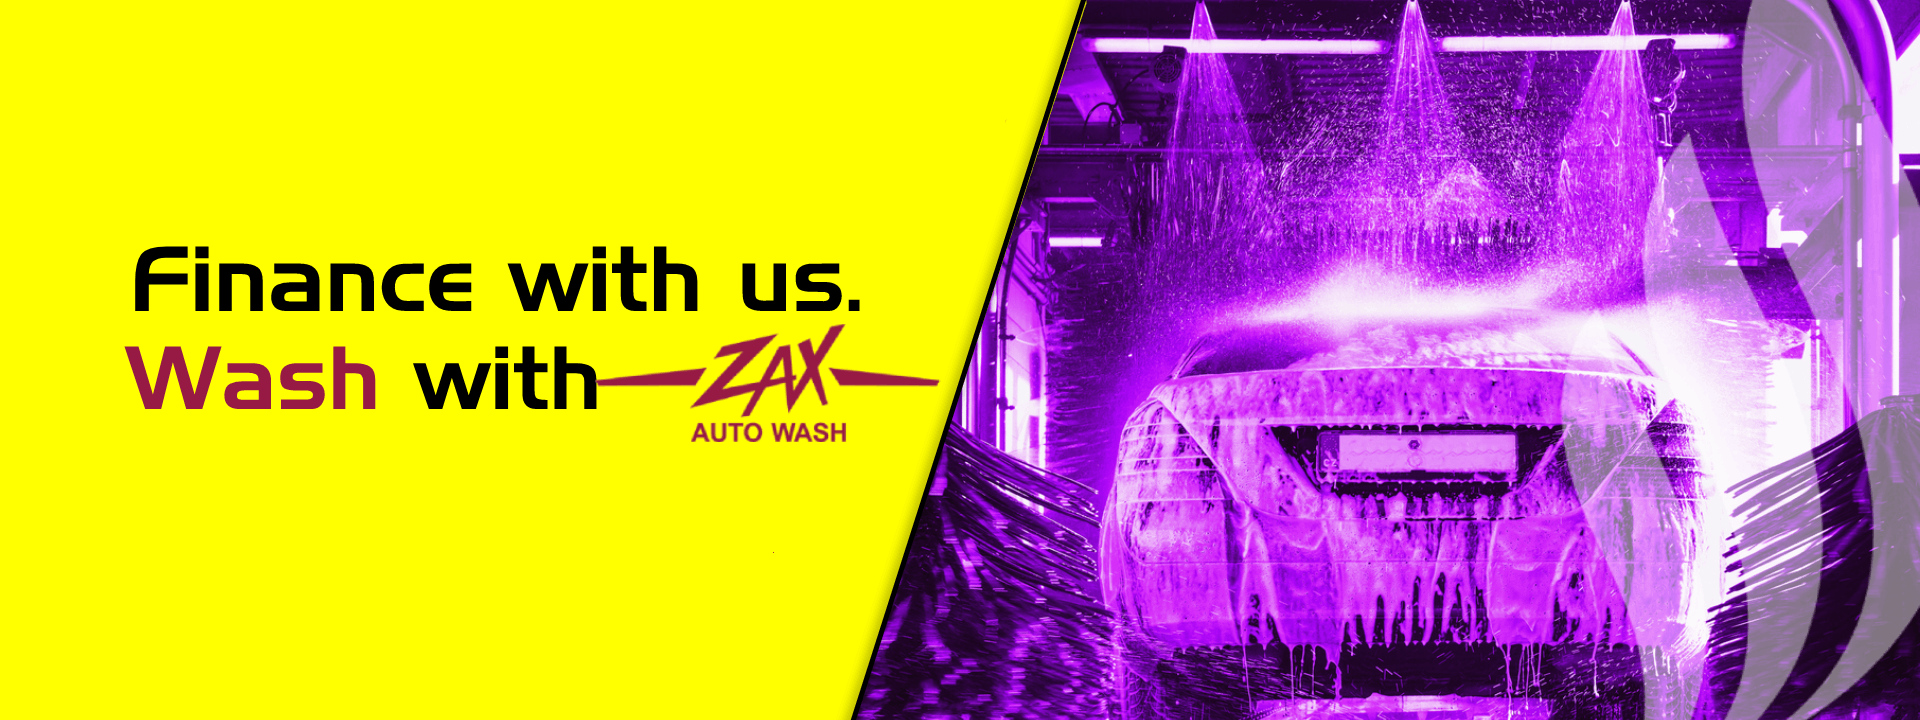 Zax Auto Wash Promotion